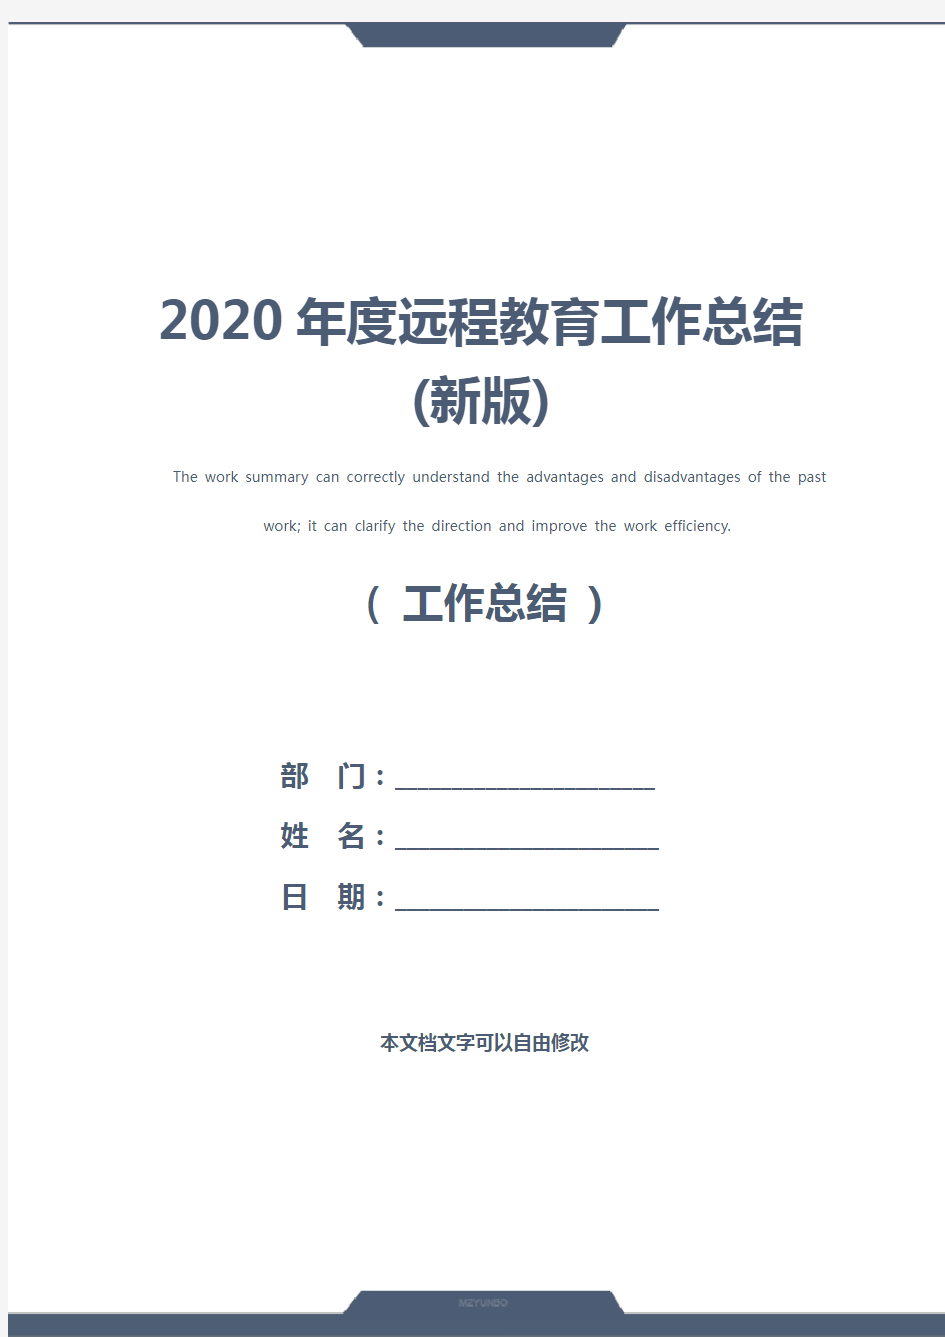 2020年度远程教育工作总结(新版)